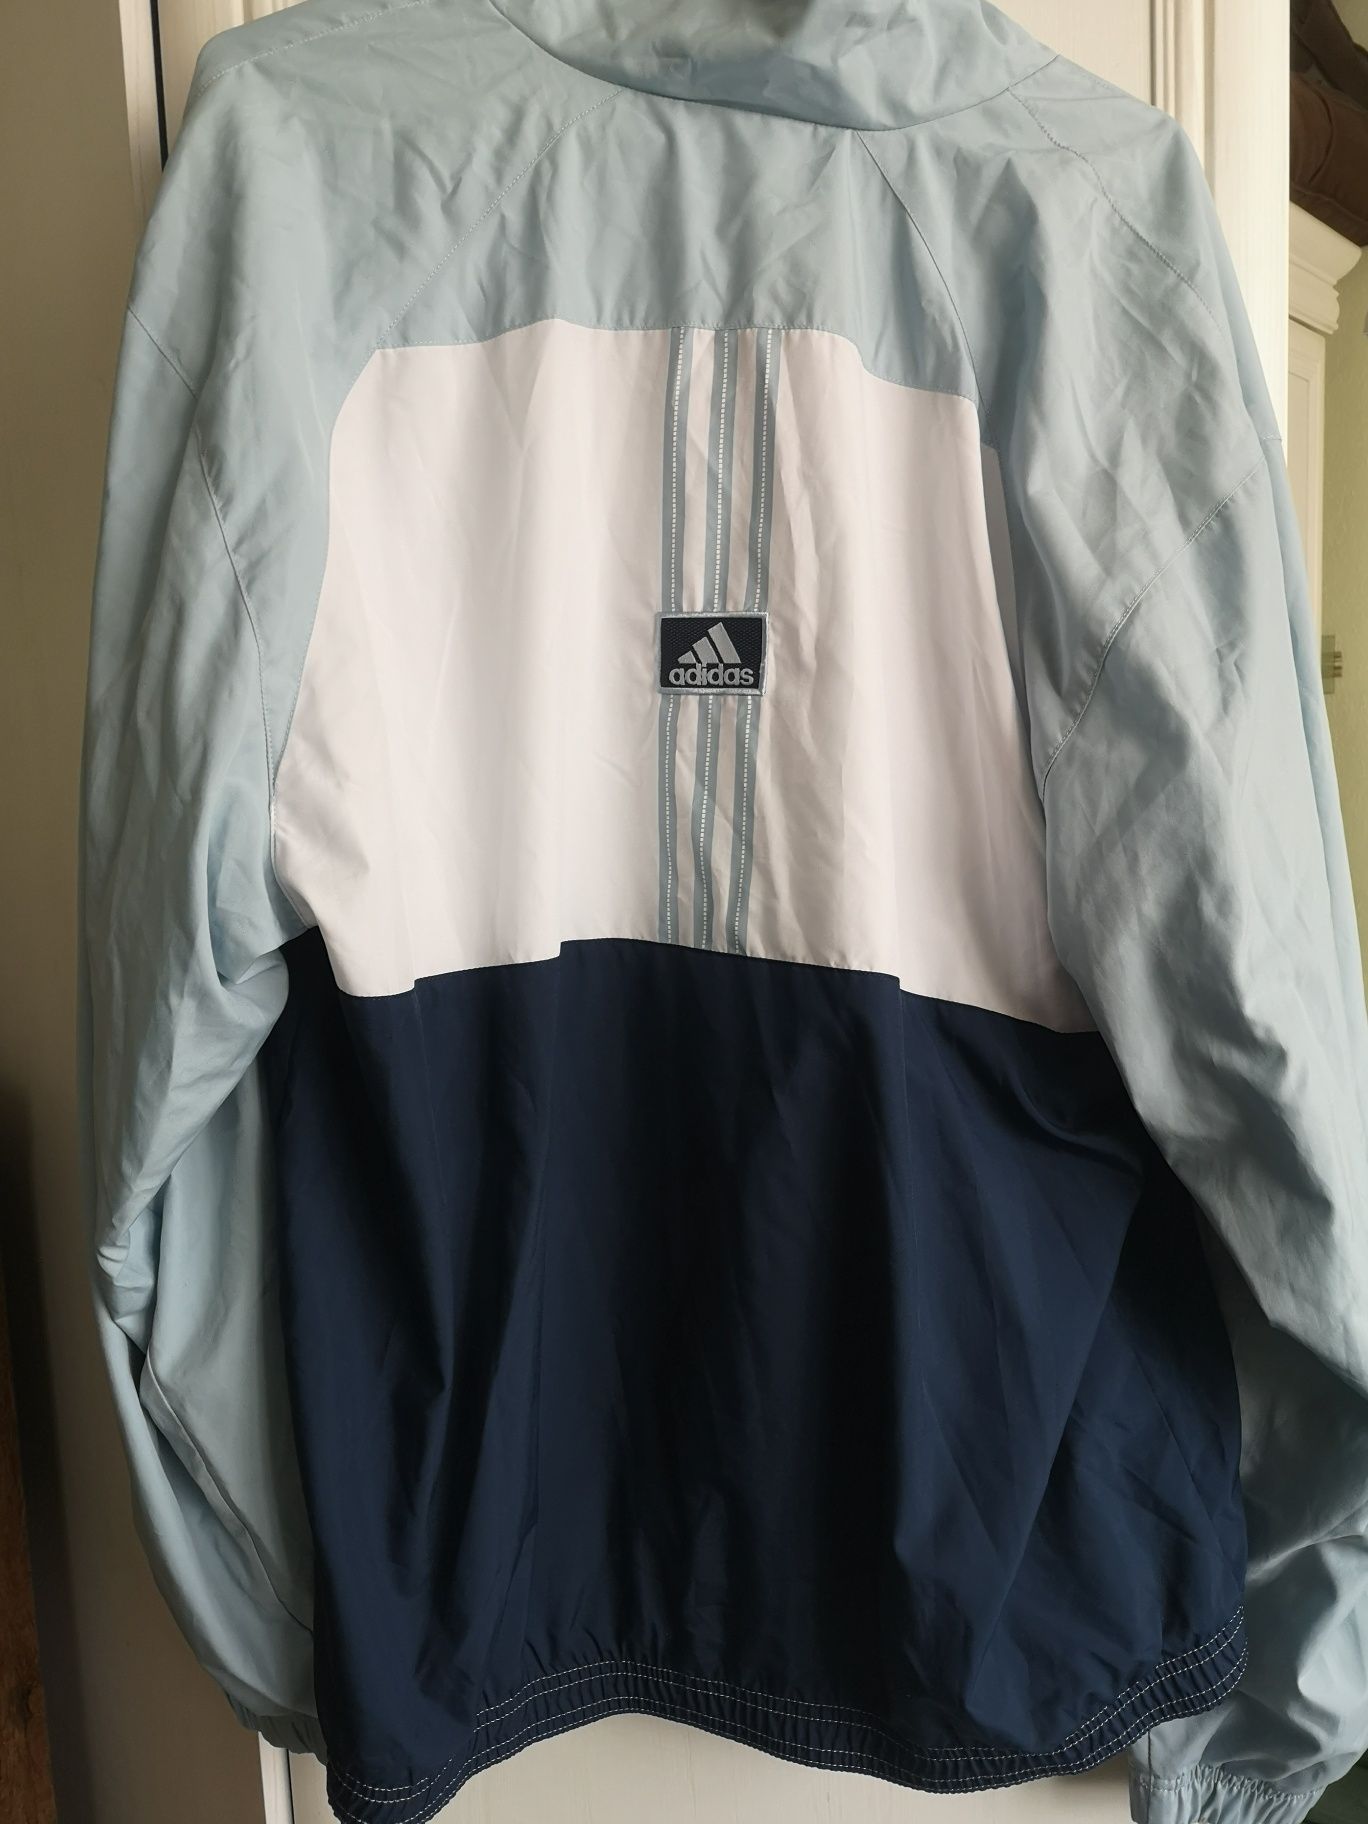 Adidas jasno niebieska błękitna kurtka przejściówka wiosenna M